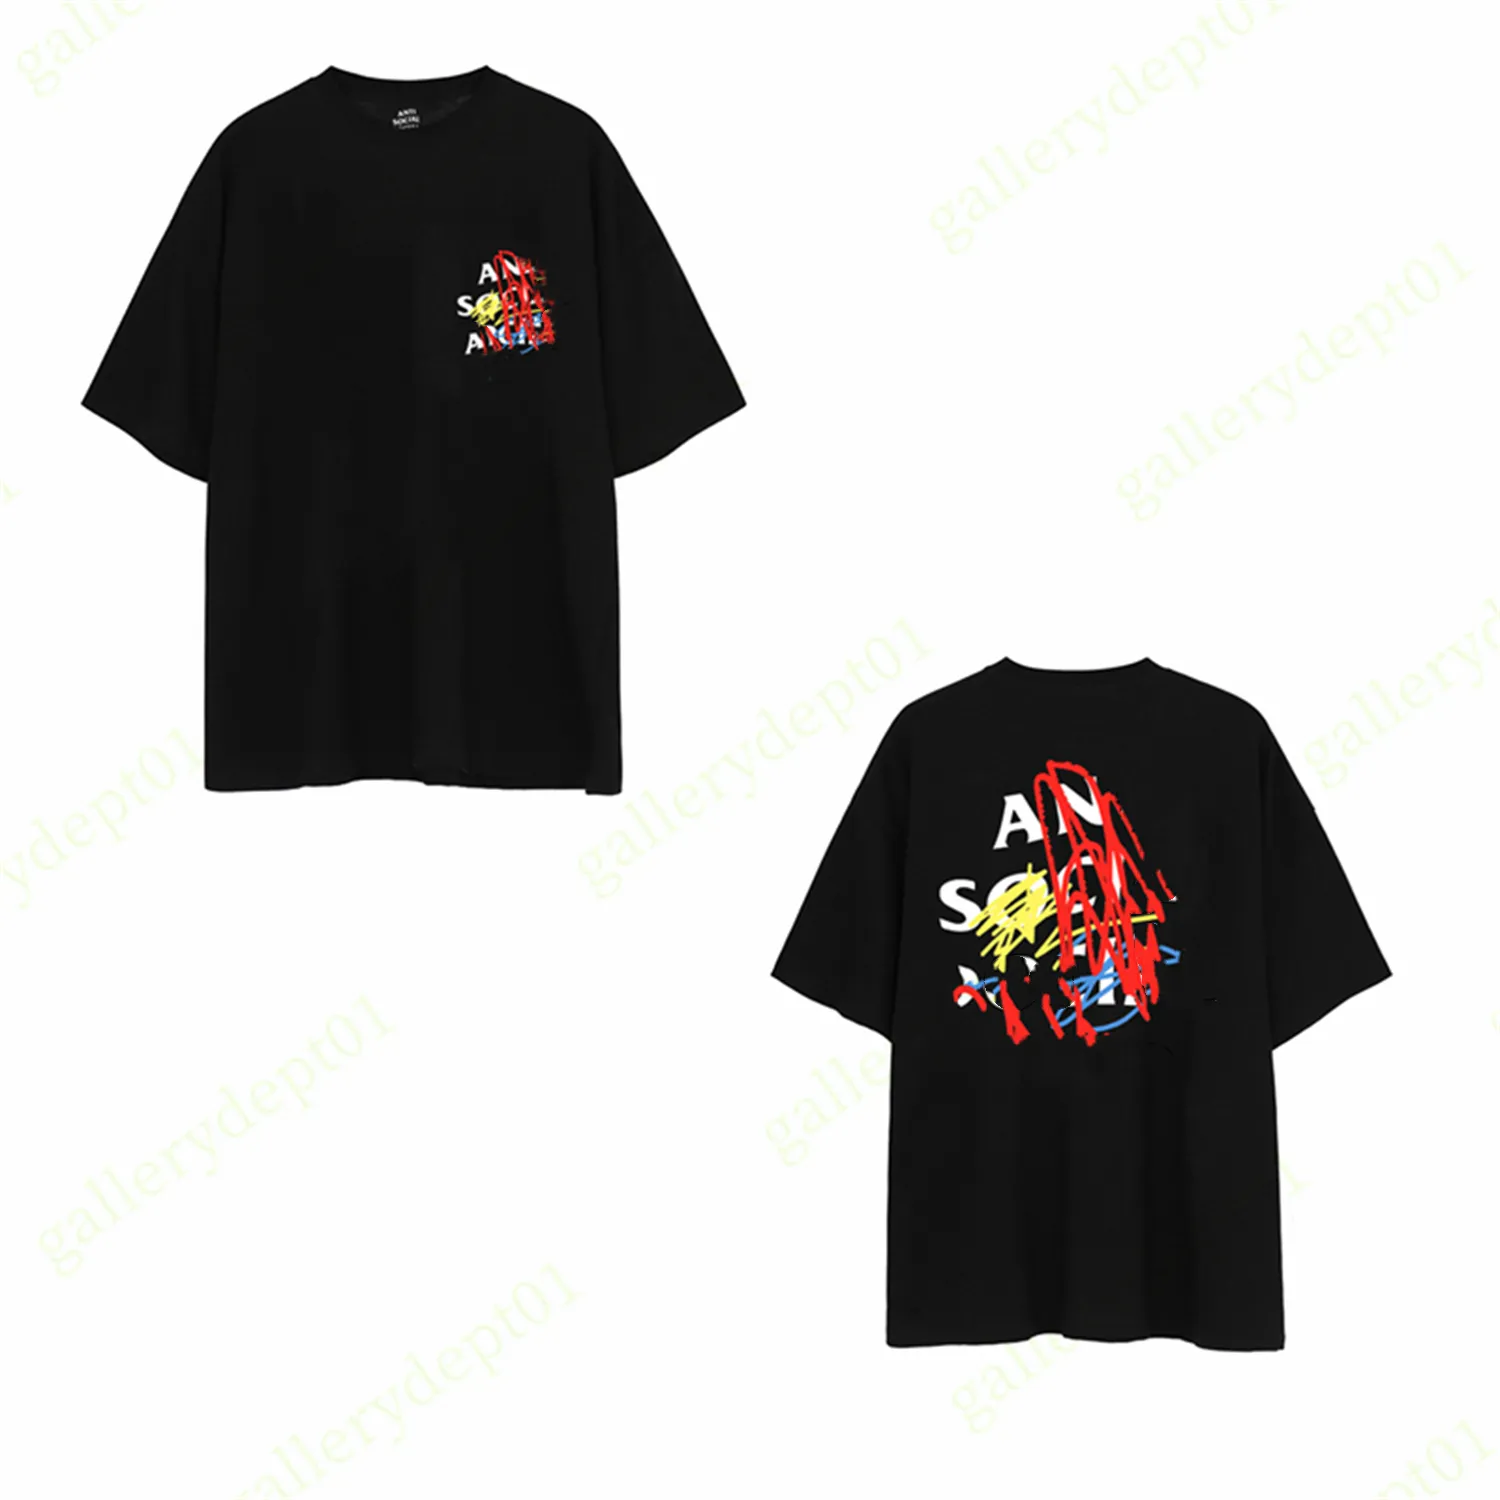 Mens camiseta designer t camisetas hip hop diversão roupas de roupa impressa camisetas gráficas cor inglês alfabeto mulheres camiseta de alta qualidade fitre fitre Flection A6